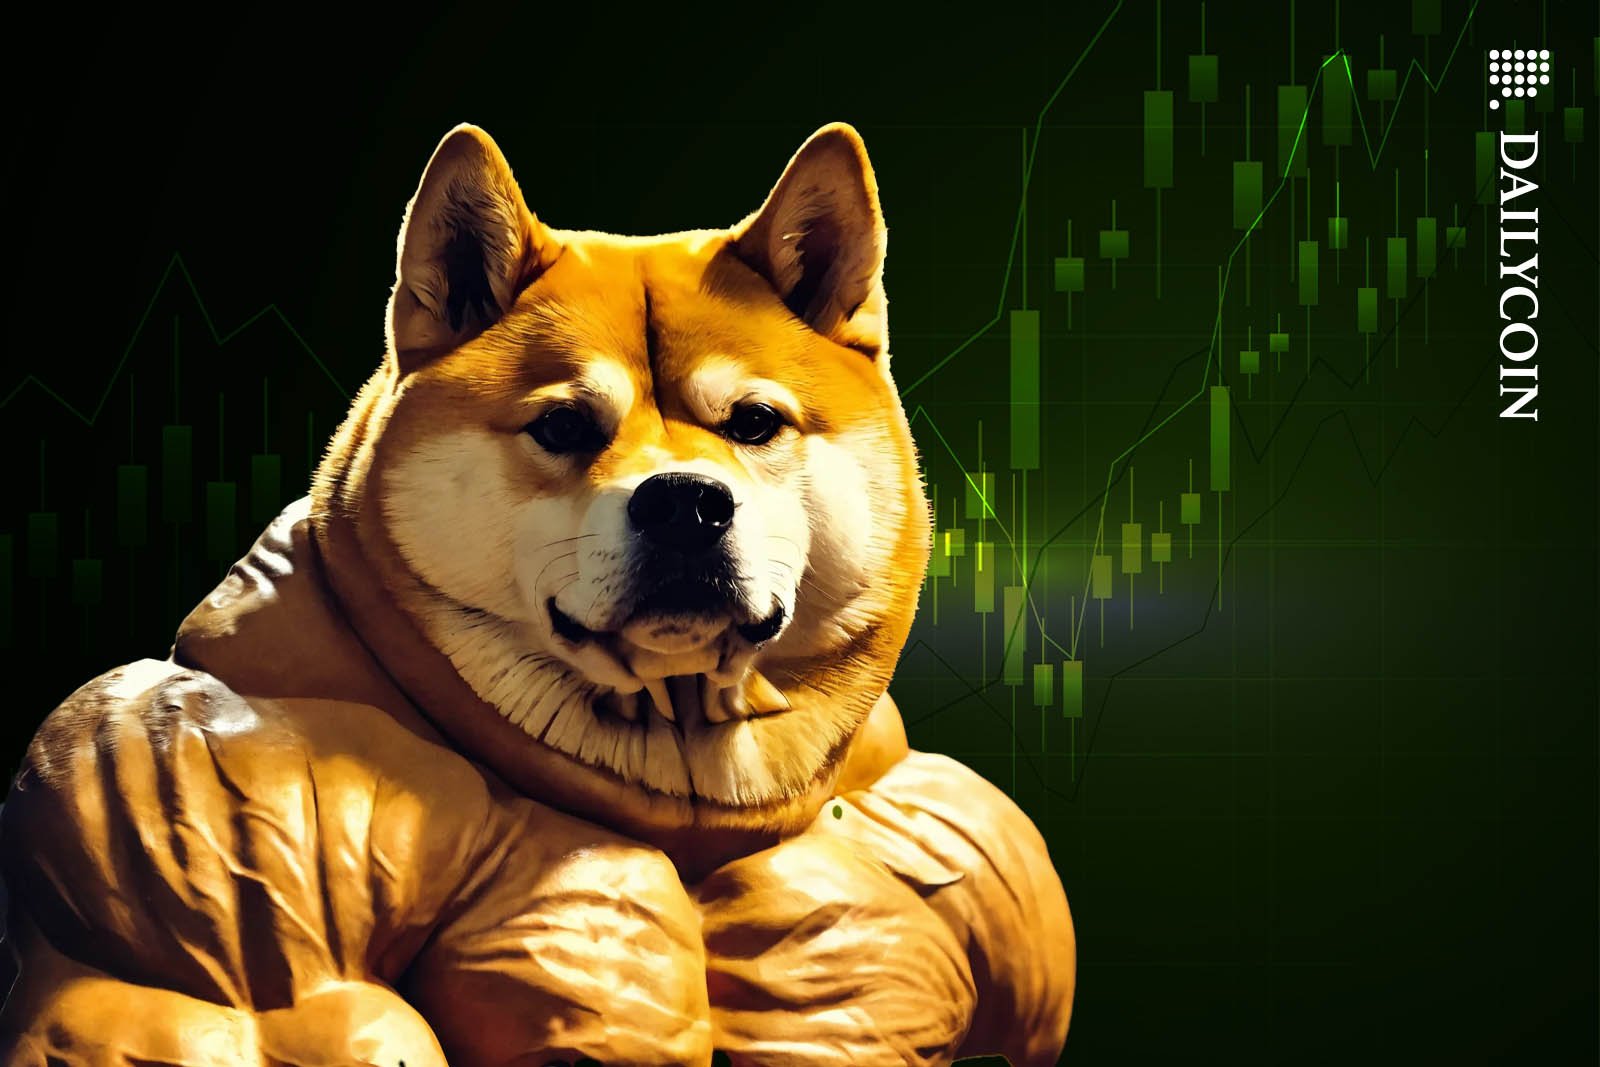 Les pièces meme augmentent, Dogecoin (DOGE) augmente de 21% et atteint un sommet historique